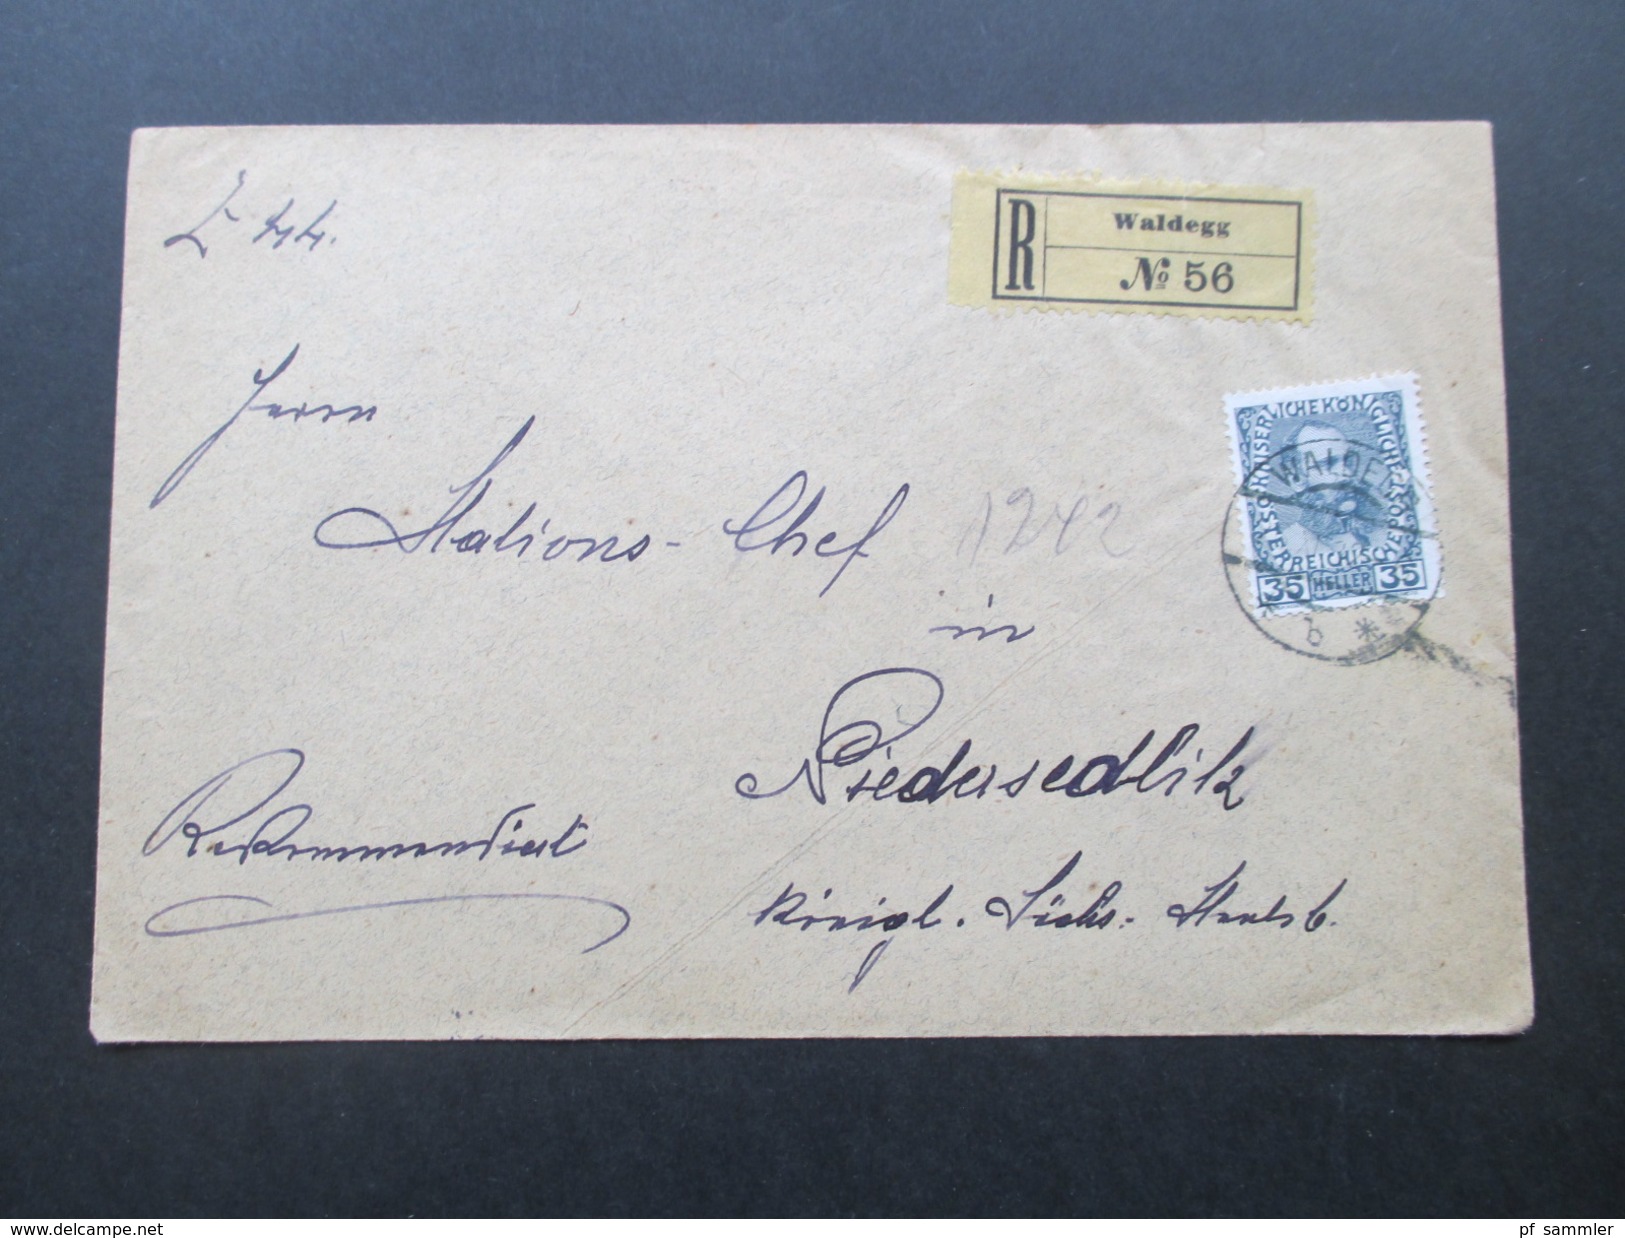 Österreich 1912 Michel Nr. 149 EF Franz Joseph. Rekommandirt R No 56 Waldegg. Stempel: K.K. St. B. - Briefe U. Dokumente